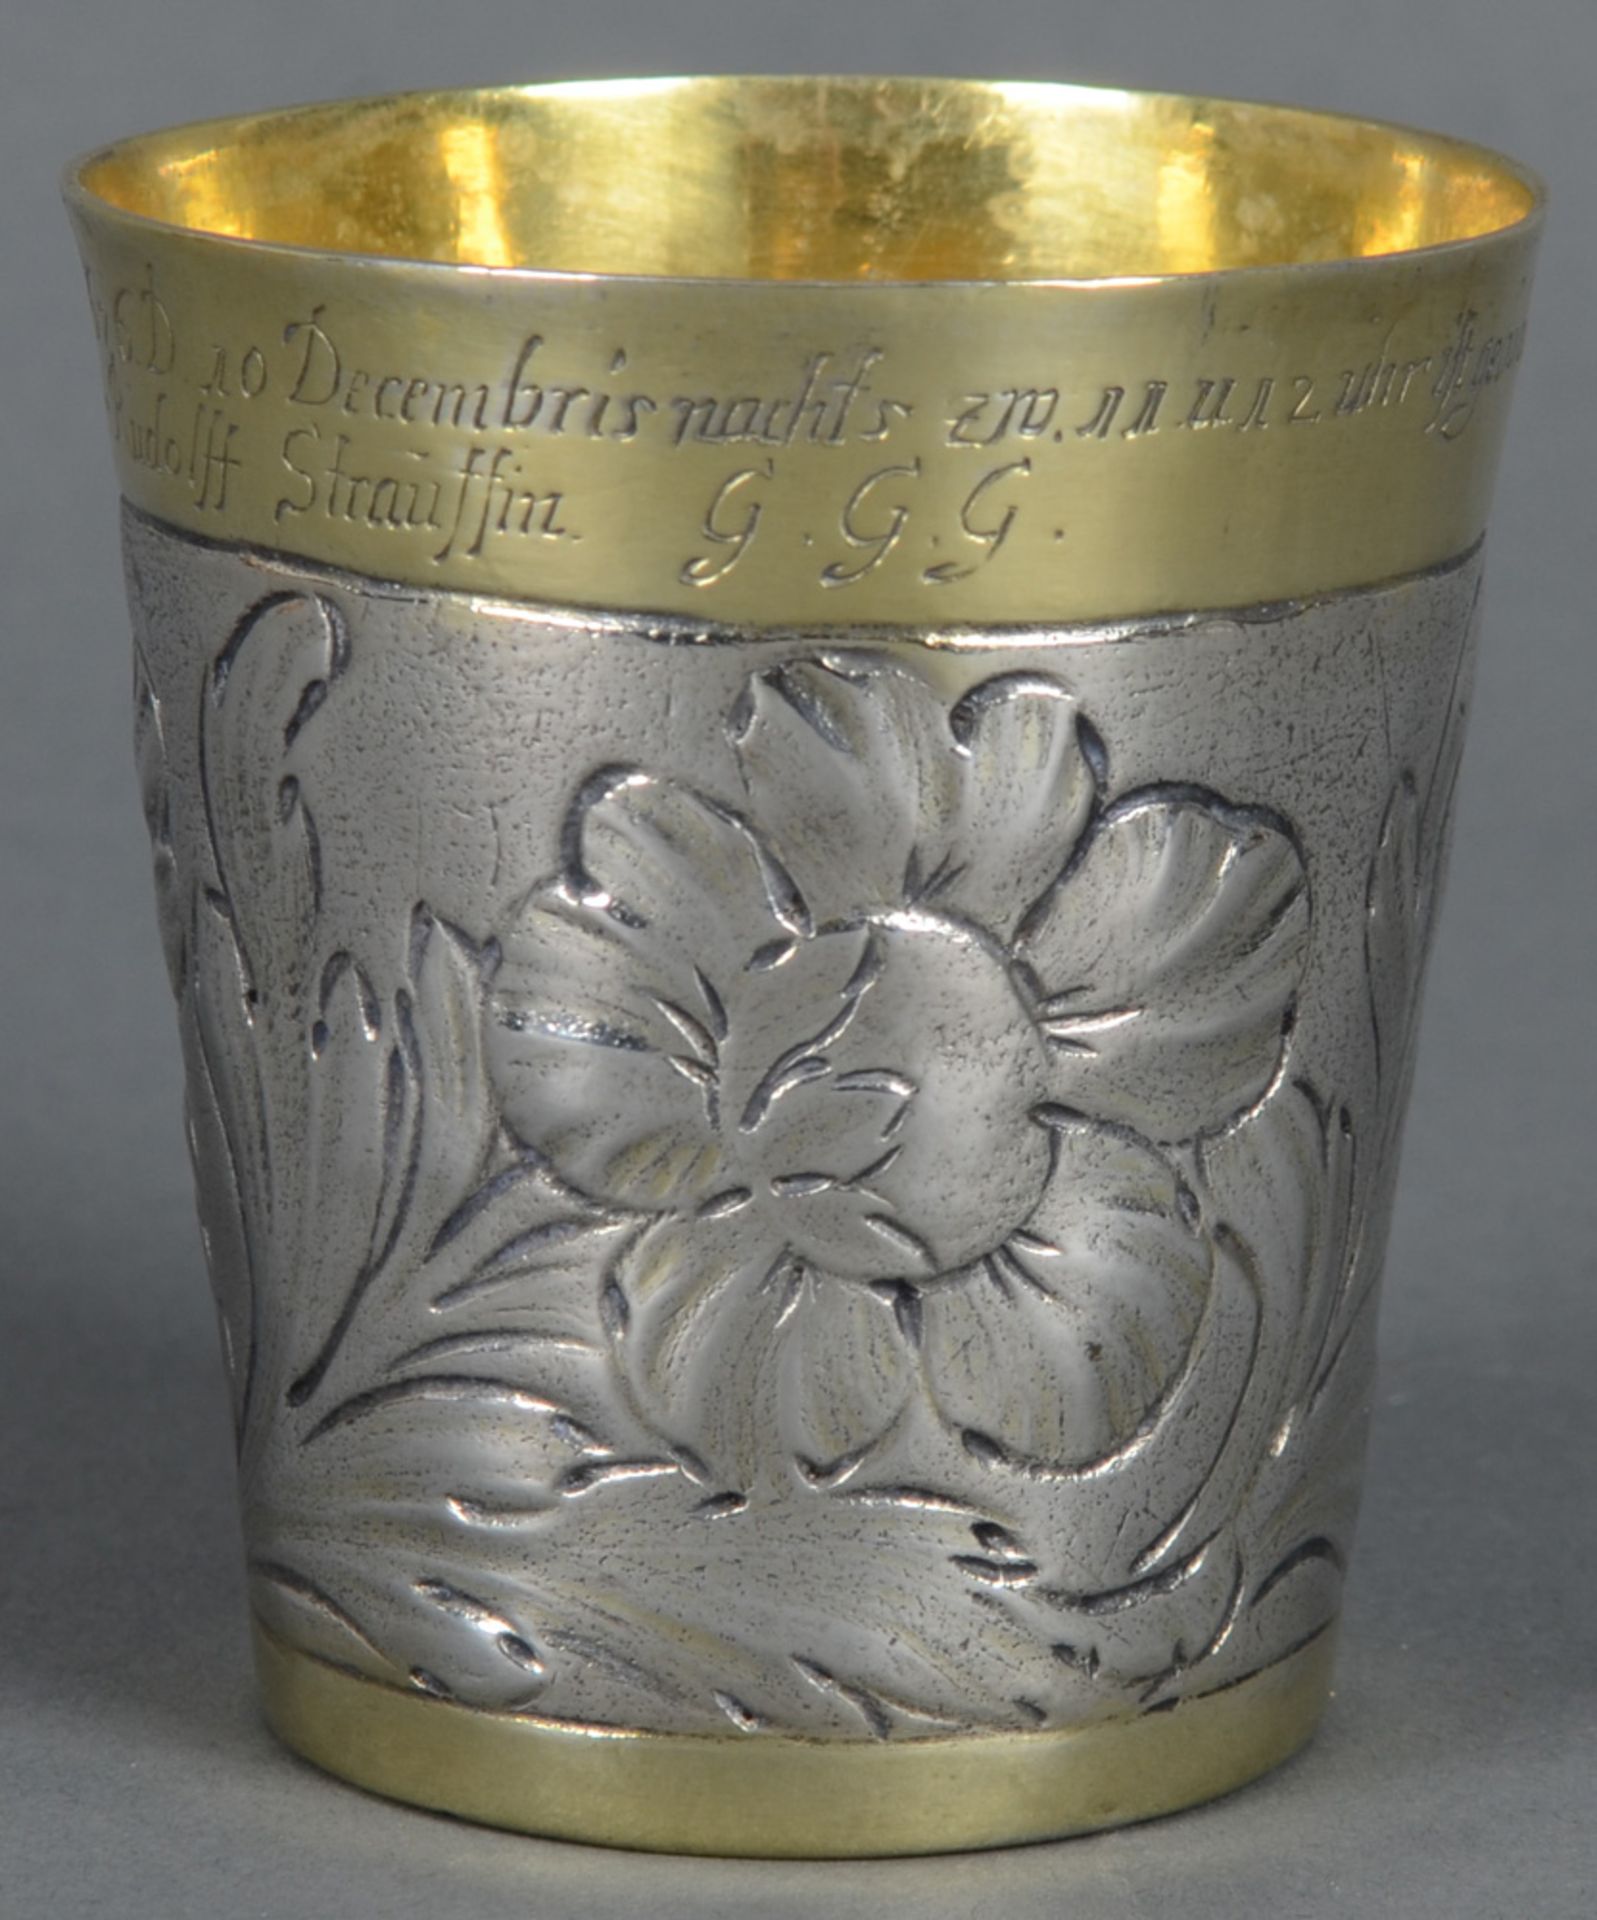 Kleiner Taufbecher. Ulm, Meister Caspar Mayer (Meister seit 1700). Silber, ca. 64 g, walzenförmig si - Bild 2 aus 5